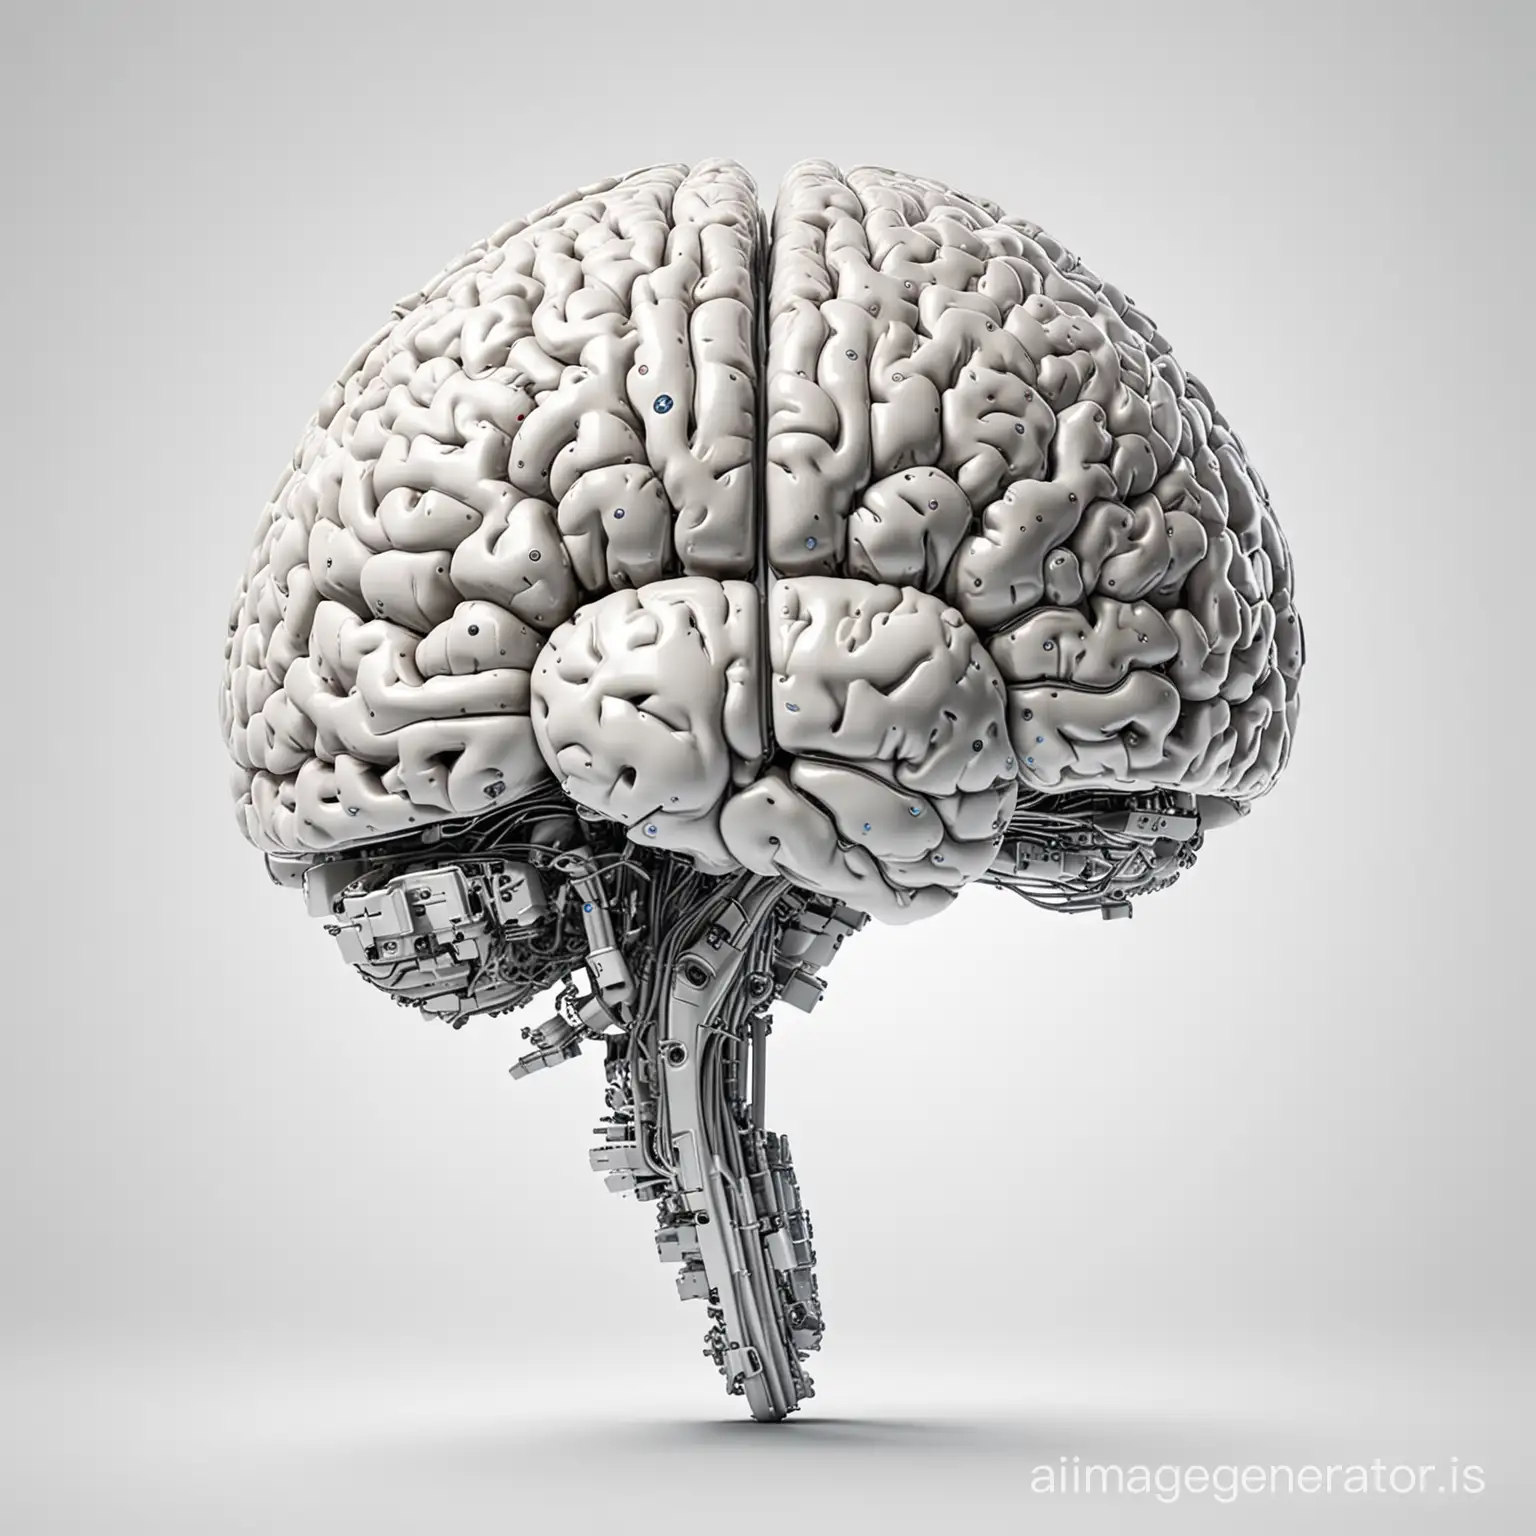 créer une image qui représente l'intelligence artificielle. Il faut un fond blanc et un cerveau humain.